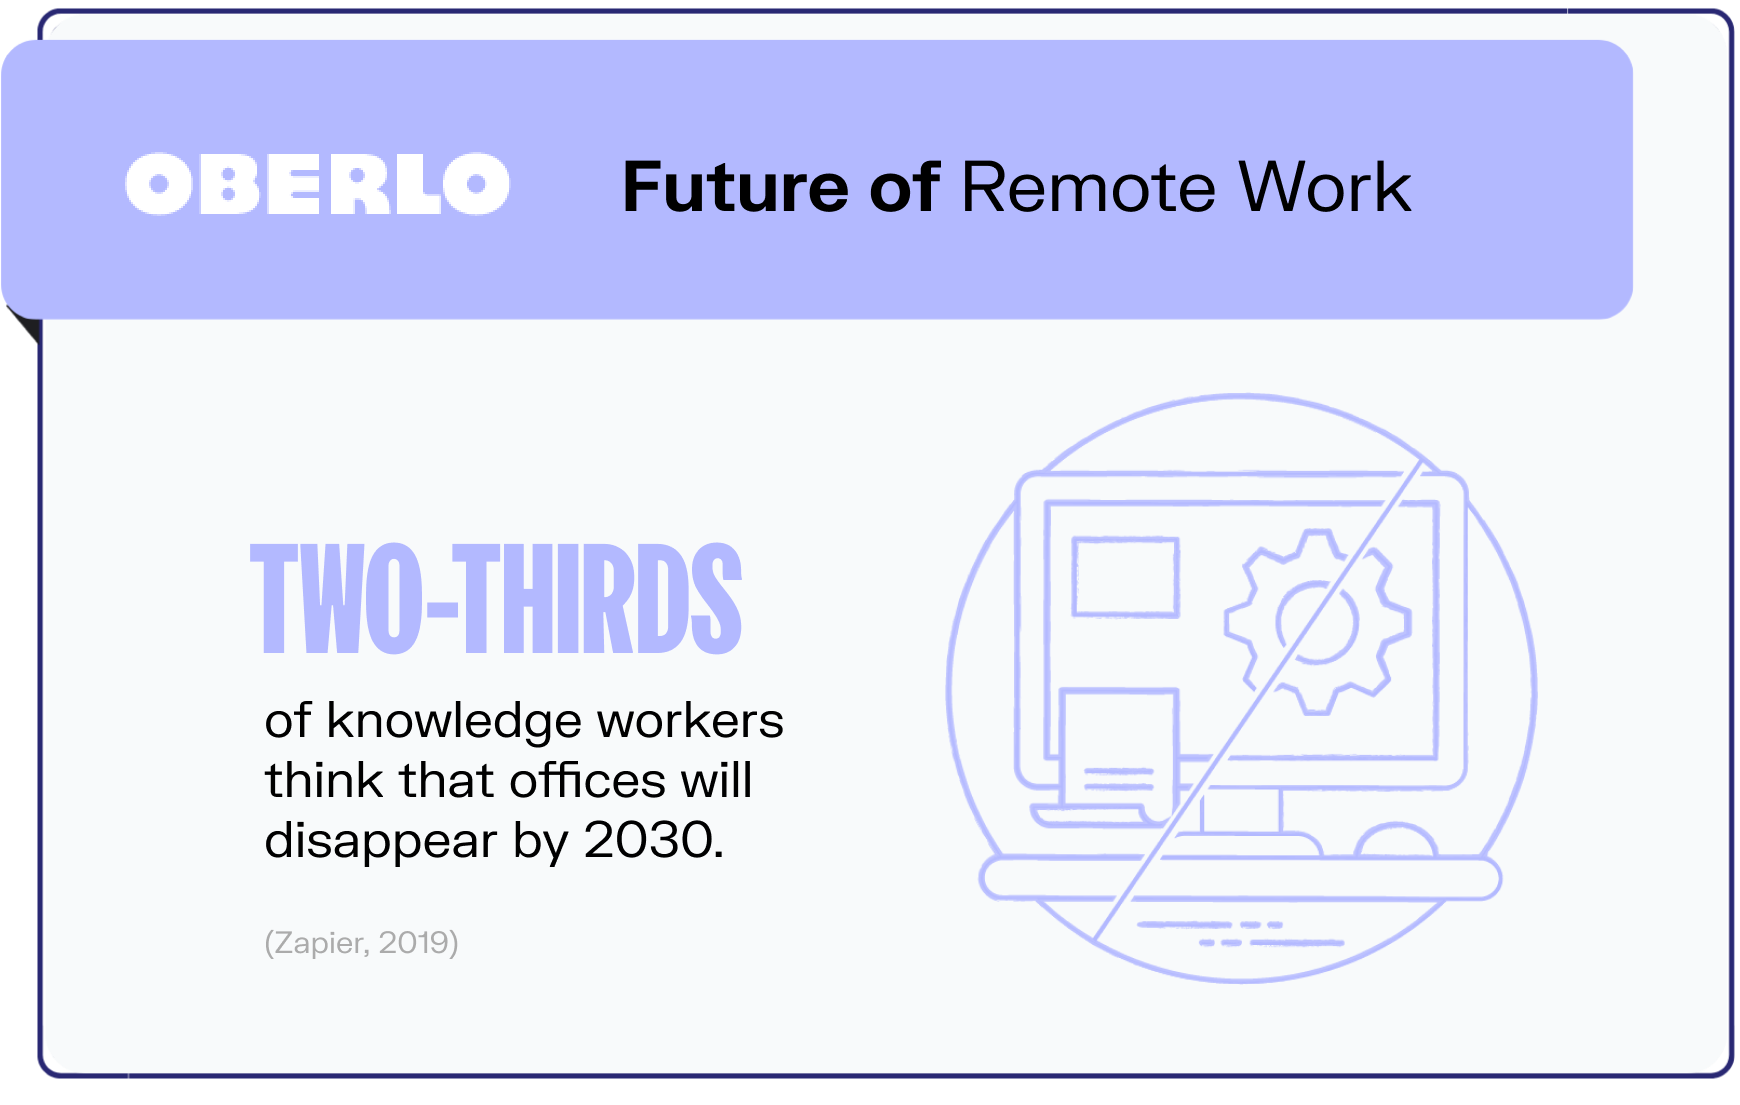 remote work statistics graphic10